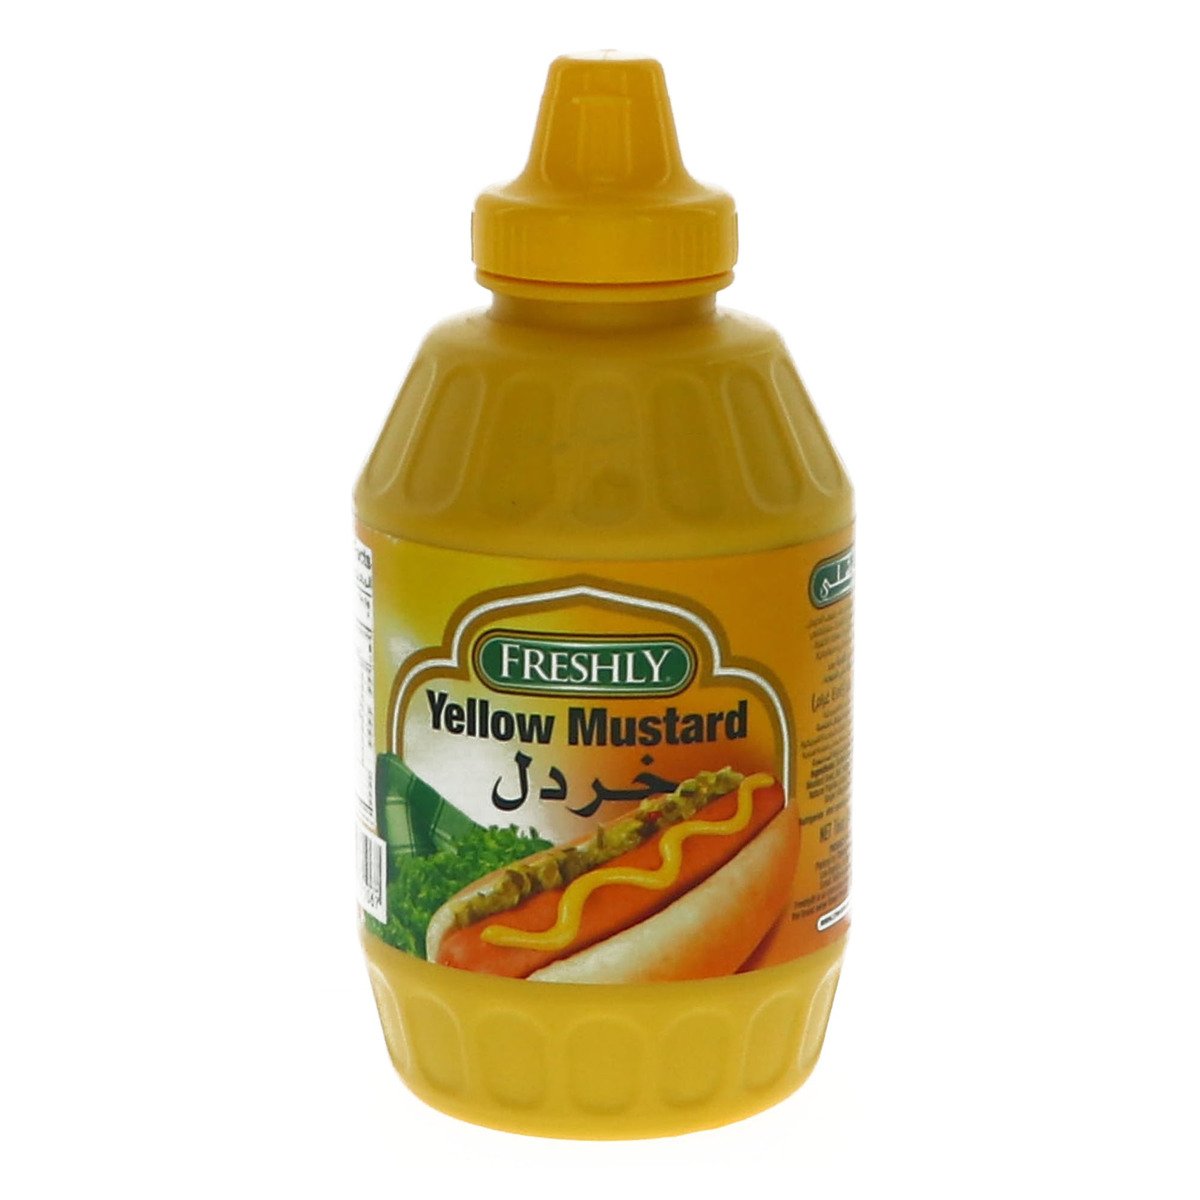 Freshly Yellow Mustard 6oz